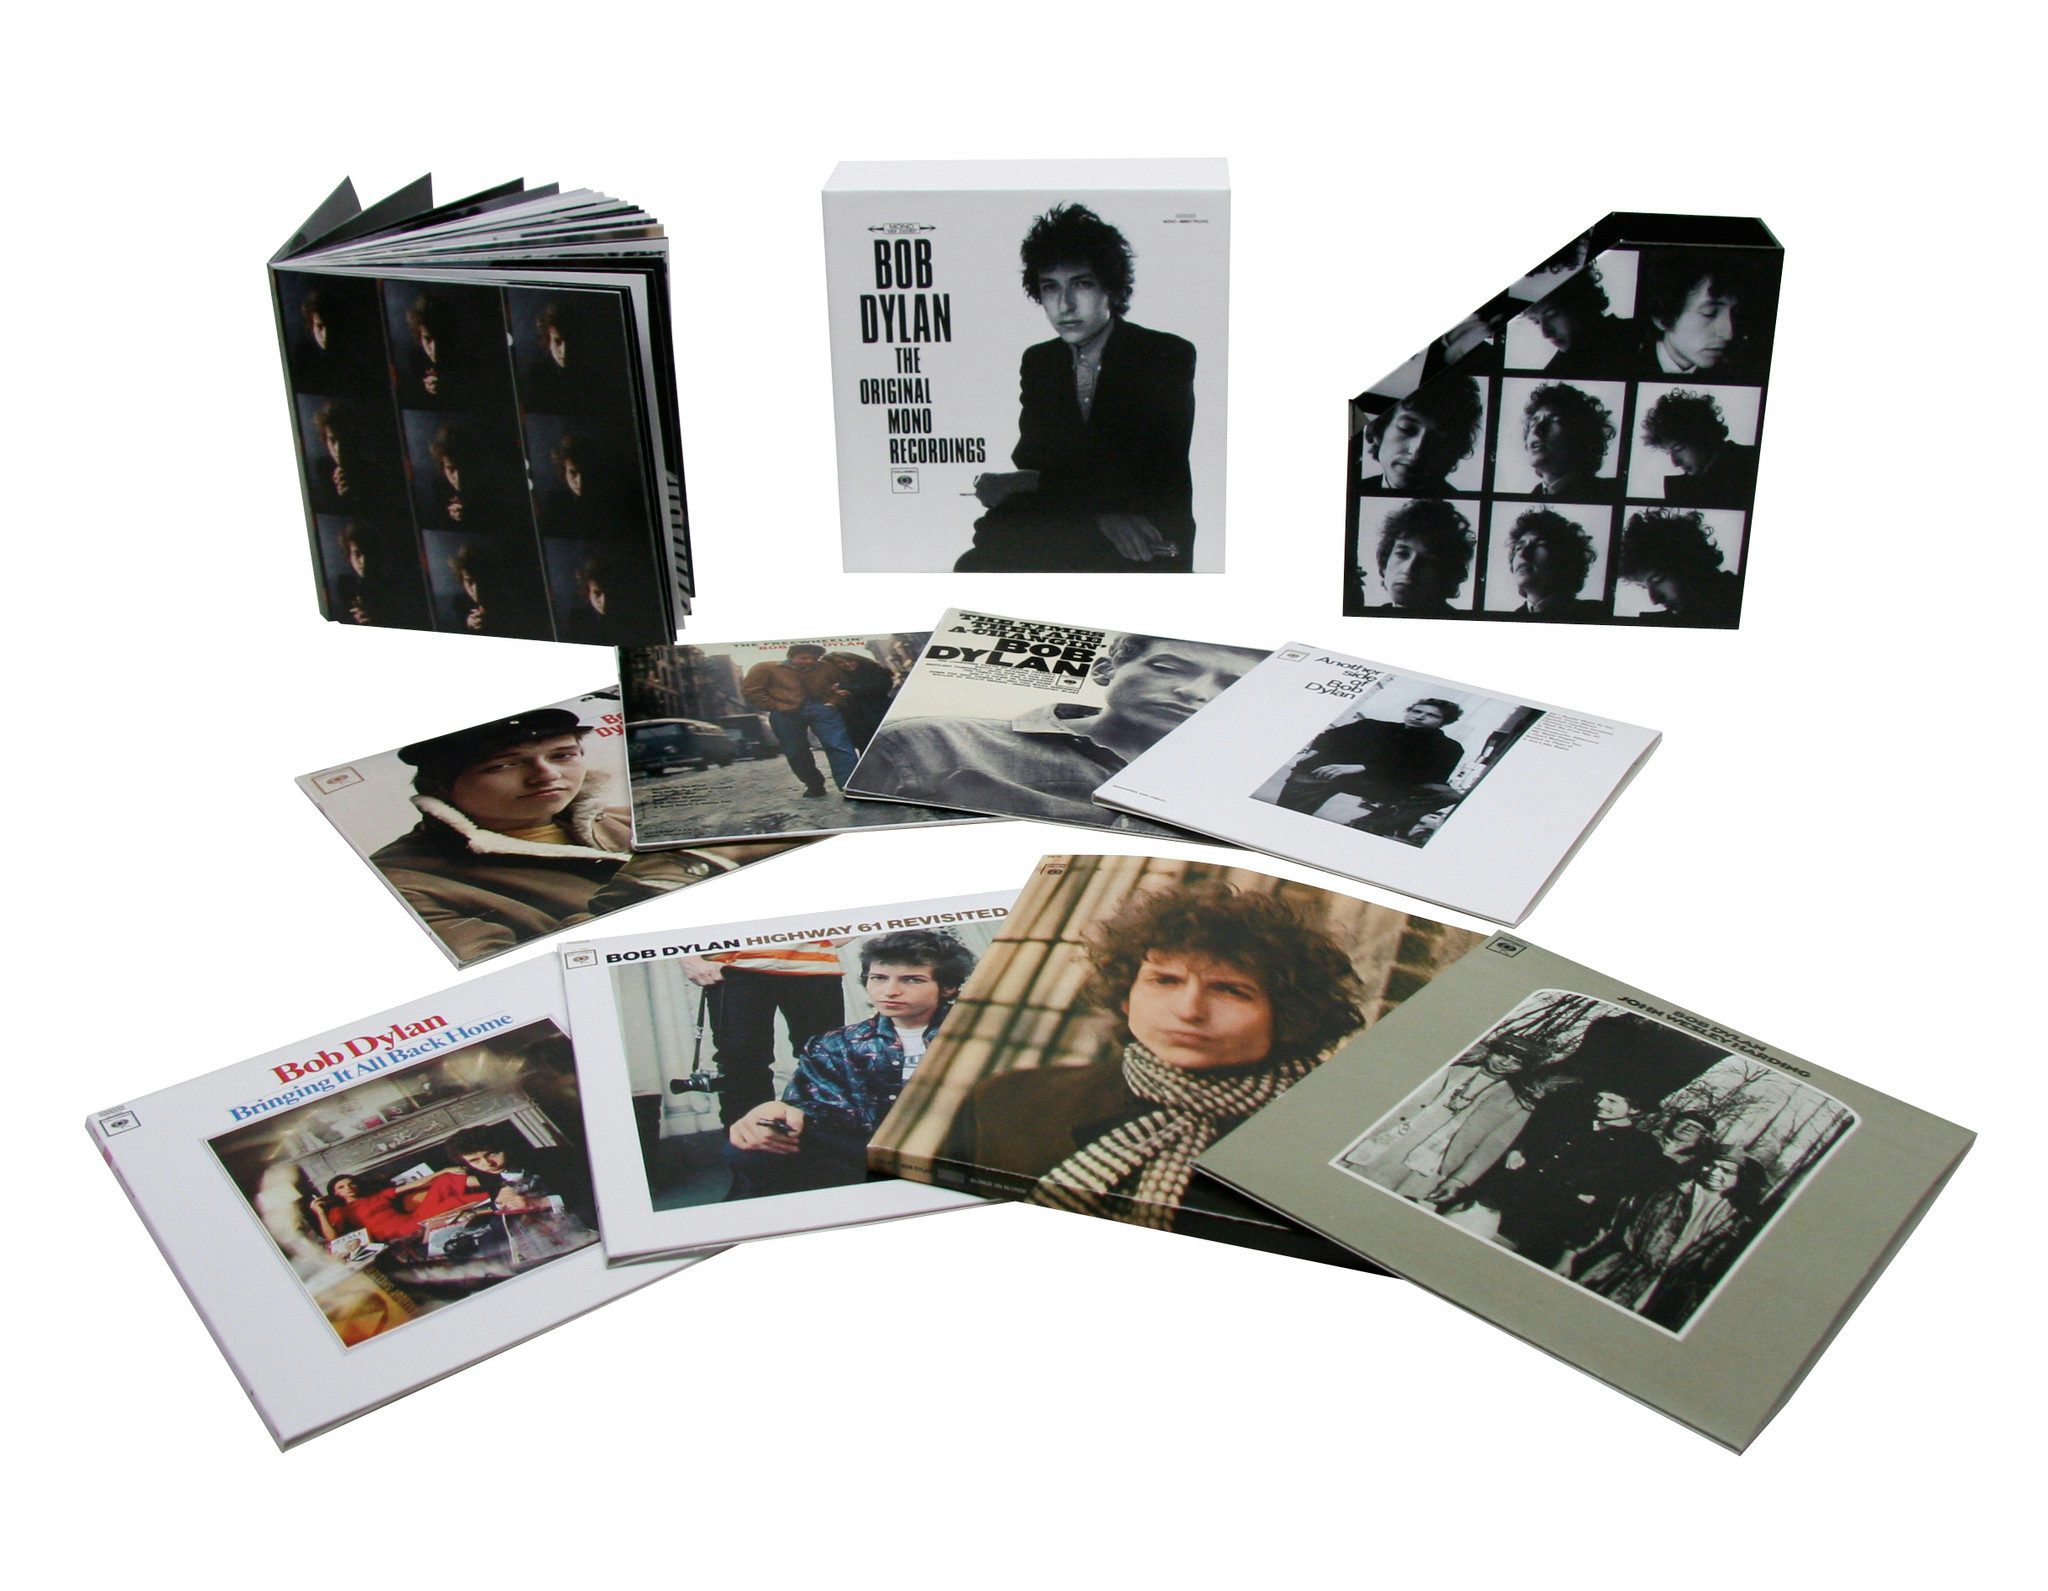 Original Mono Recordings CD (box set) - Bob Dylan